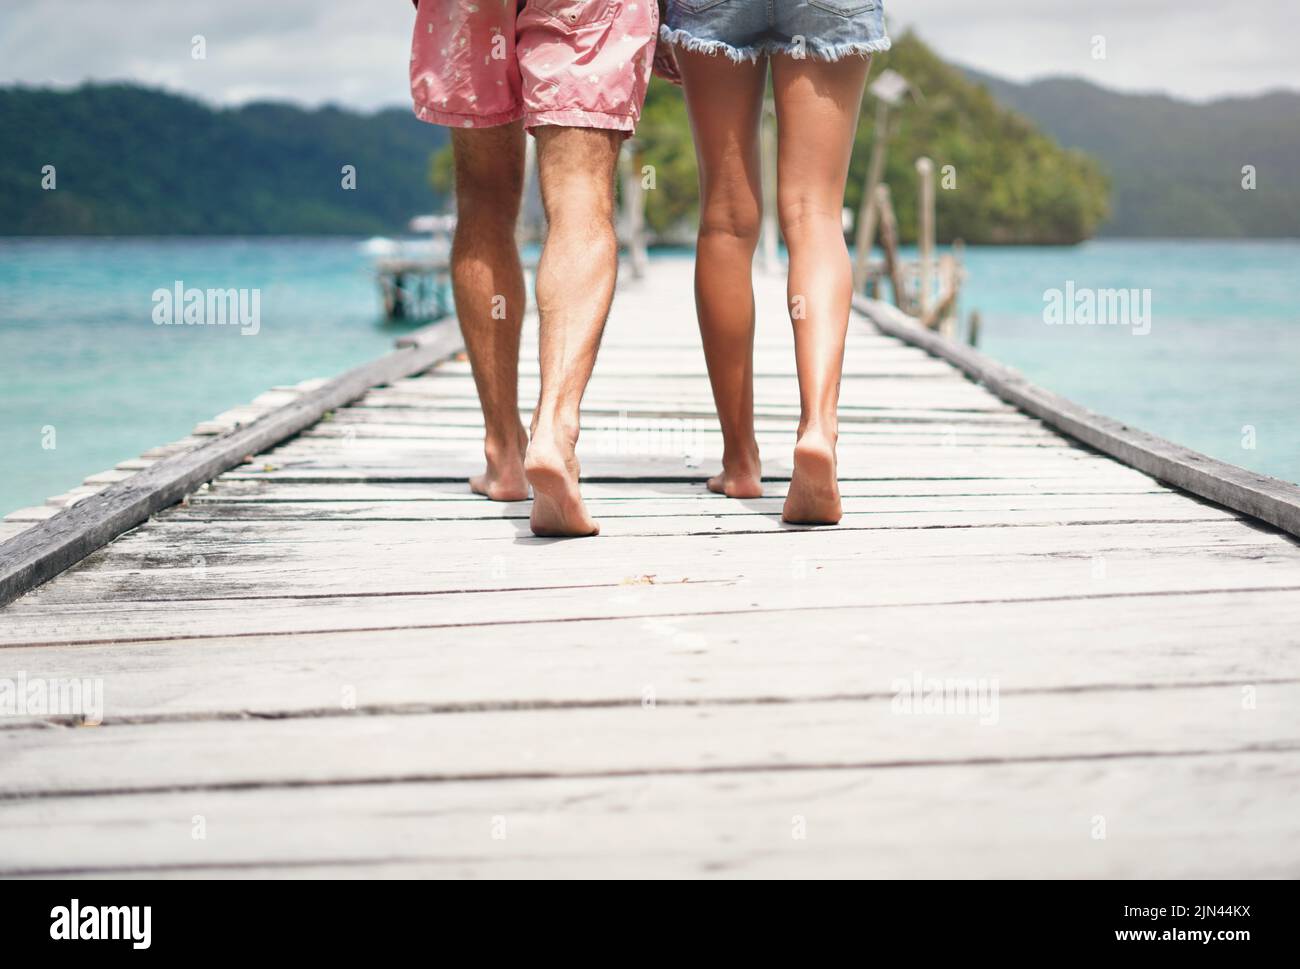 Iré a cualquier parte con él. Imagen trasera de una pareja irreconocible caminando por un paseo marítimo con vistas al océano durante las vacaciones. Foto de stock